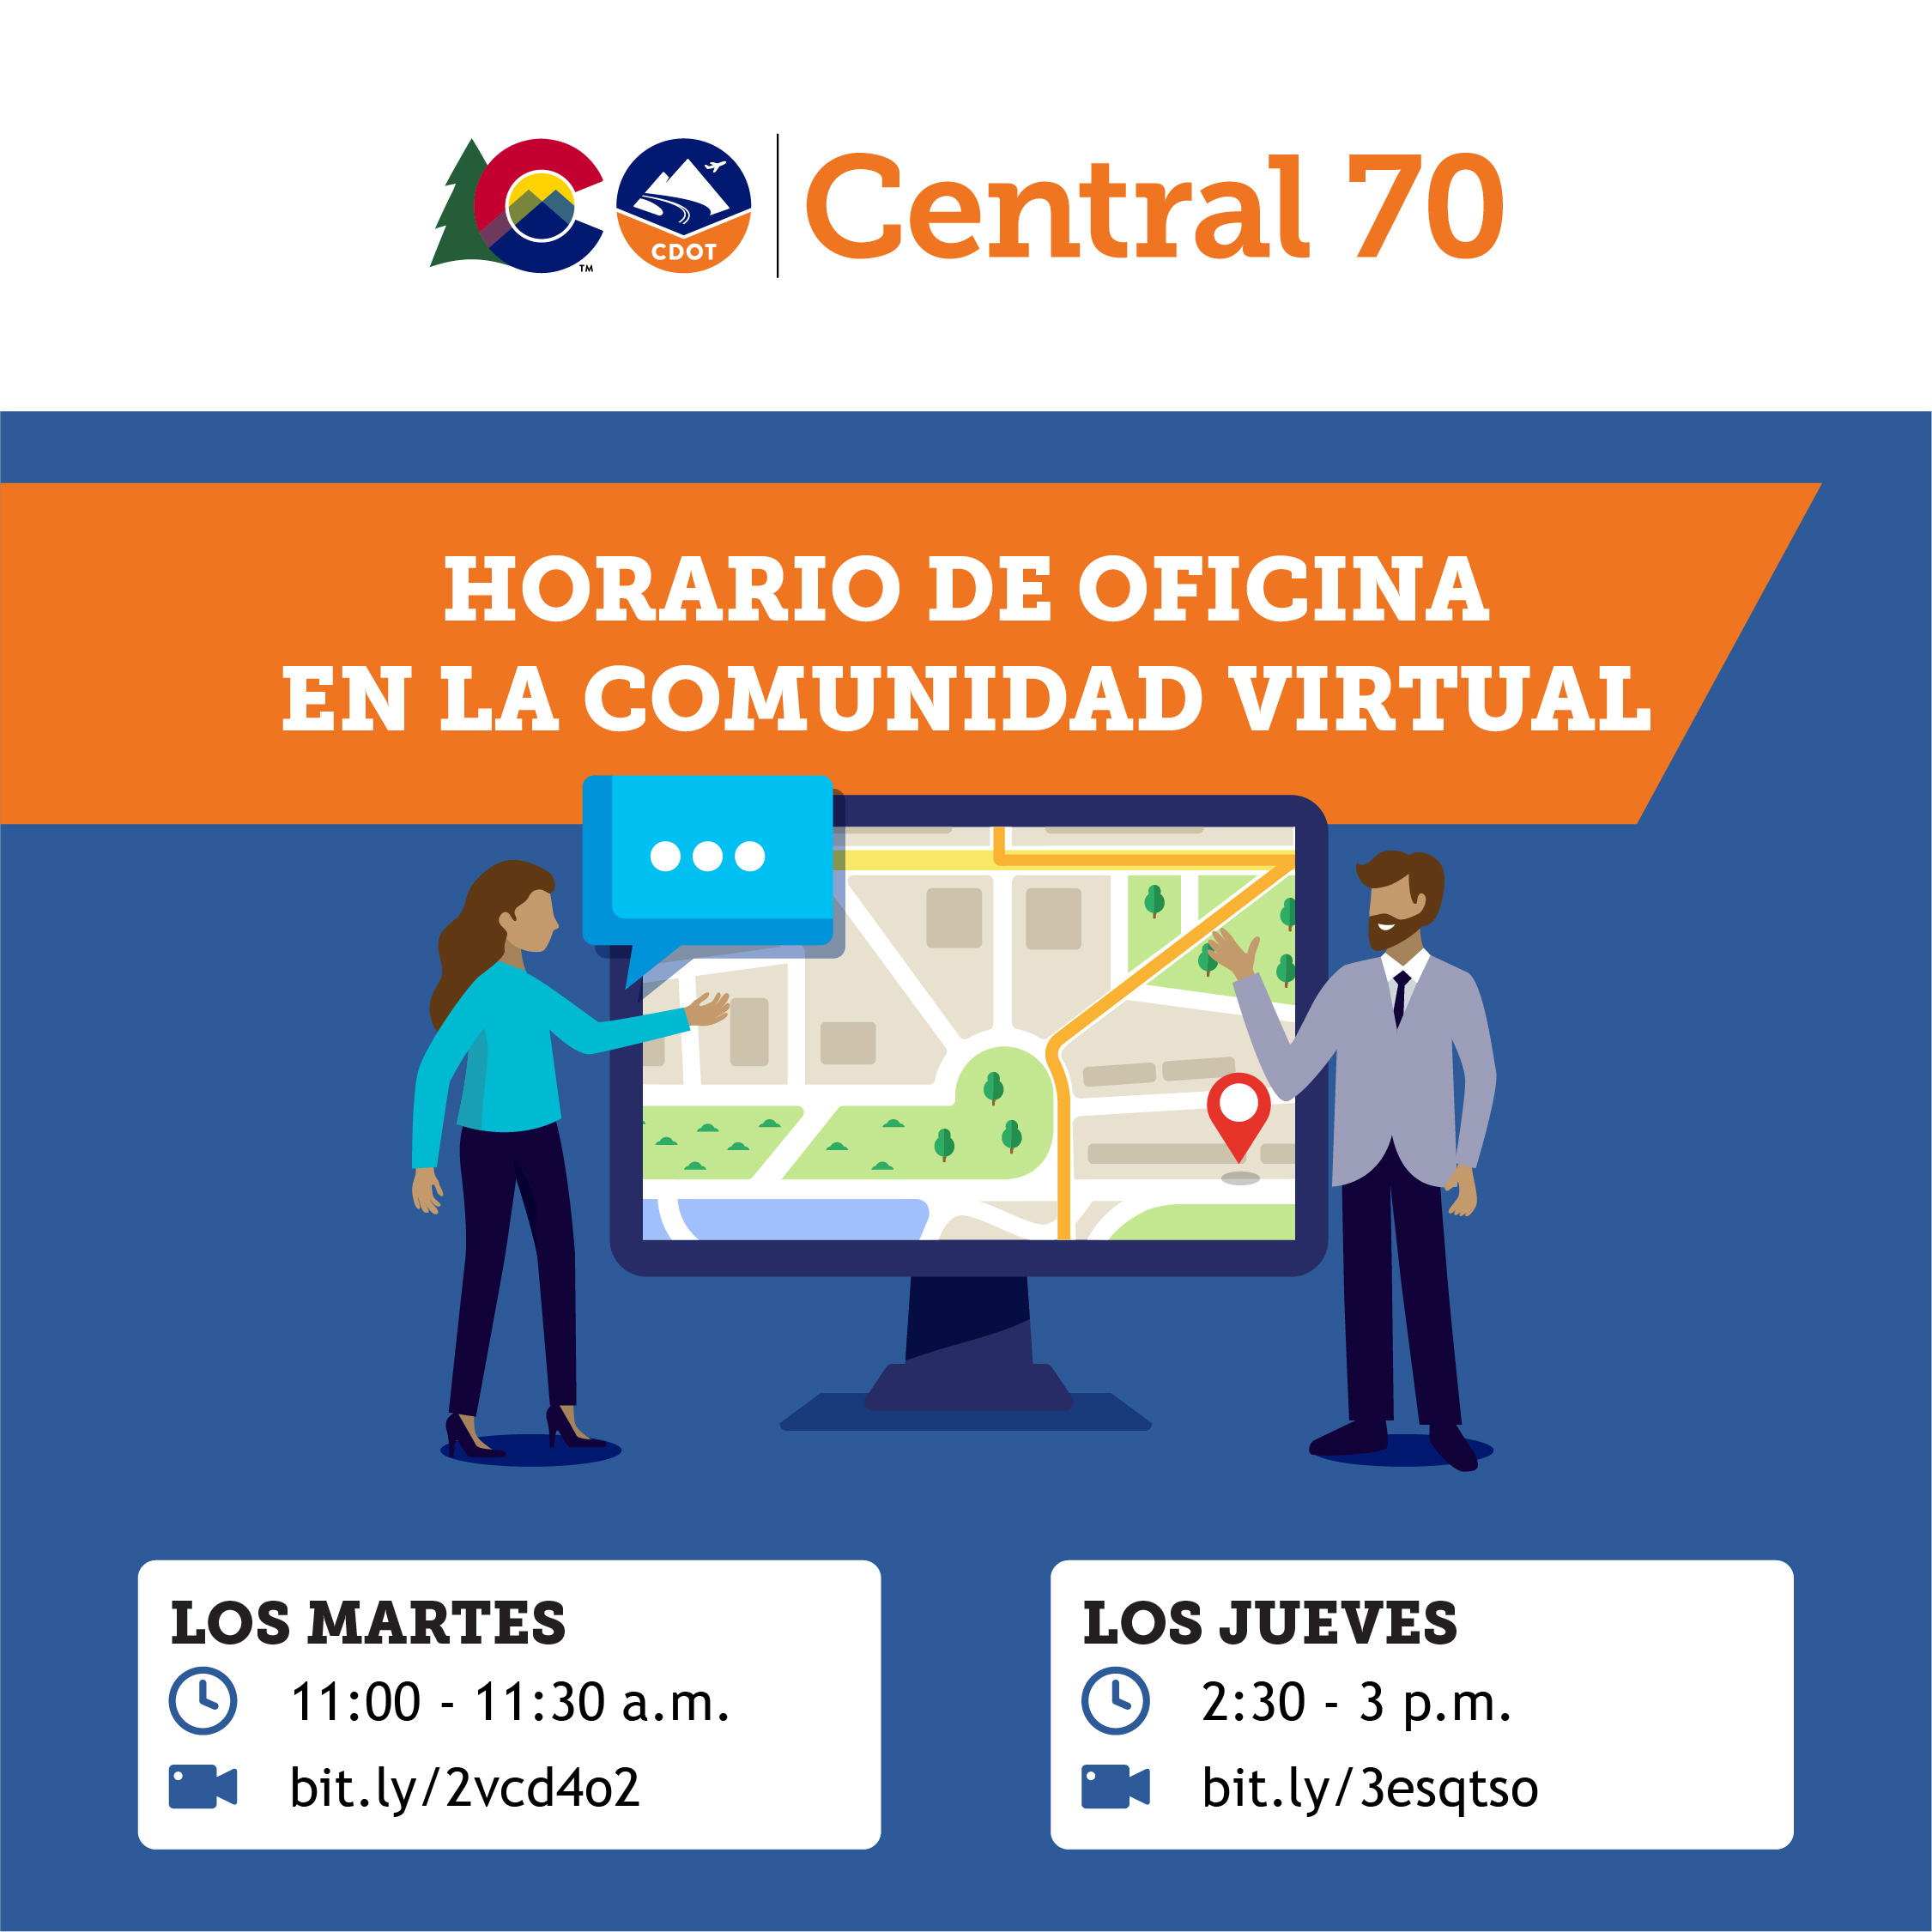 C70_VirtualCommunityOfficeHours_Visuals_Spanish_200923_5.jpg detail image